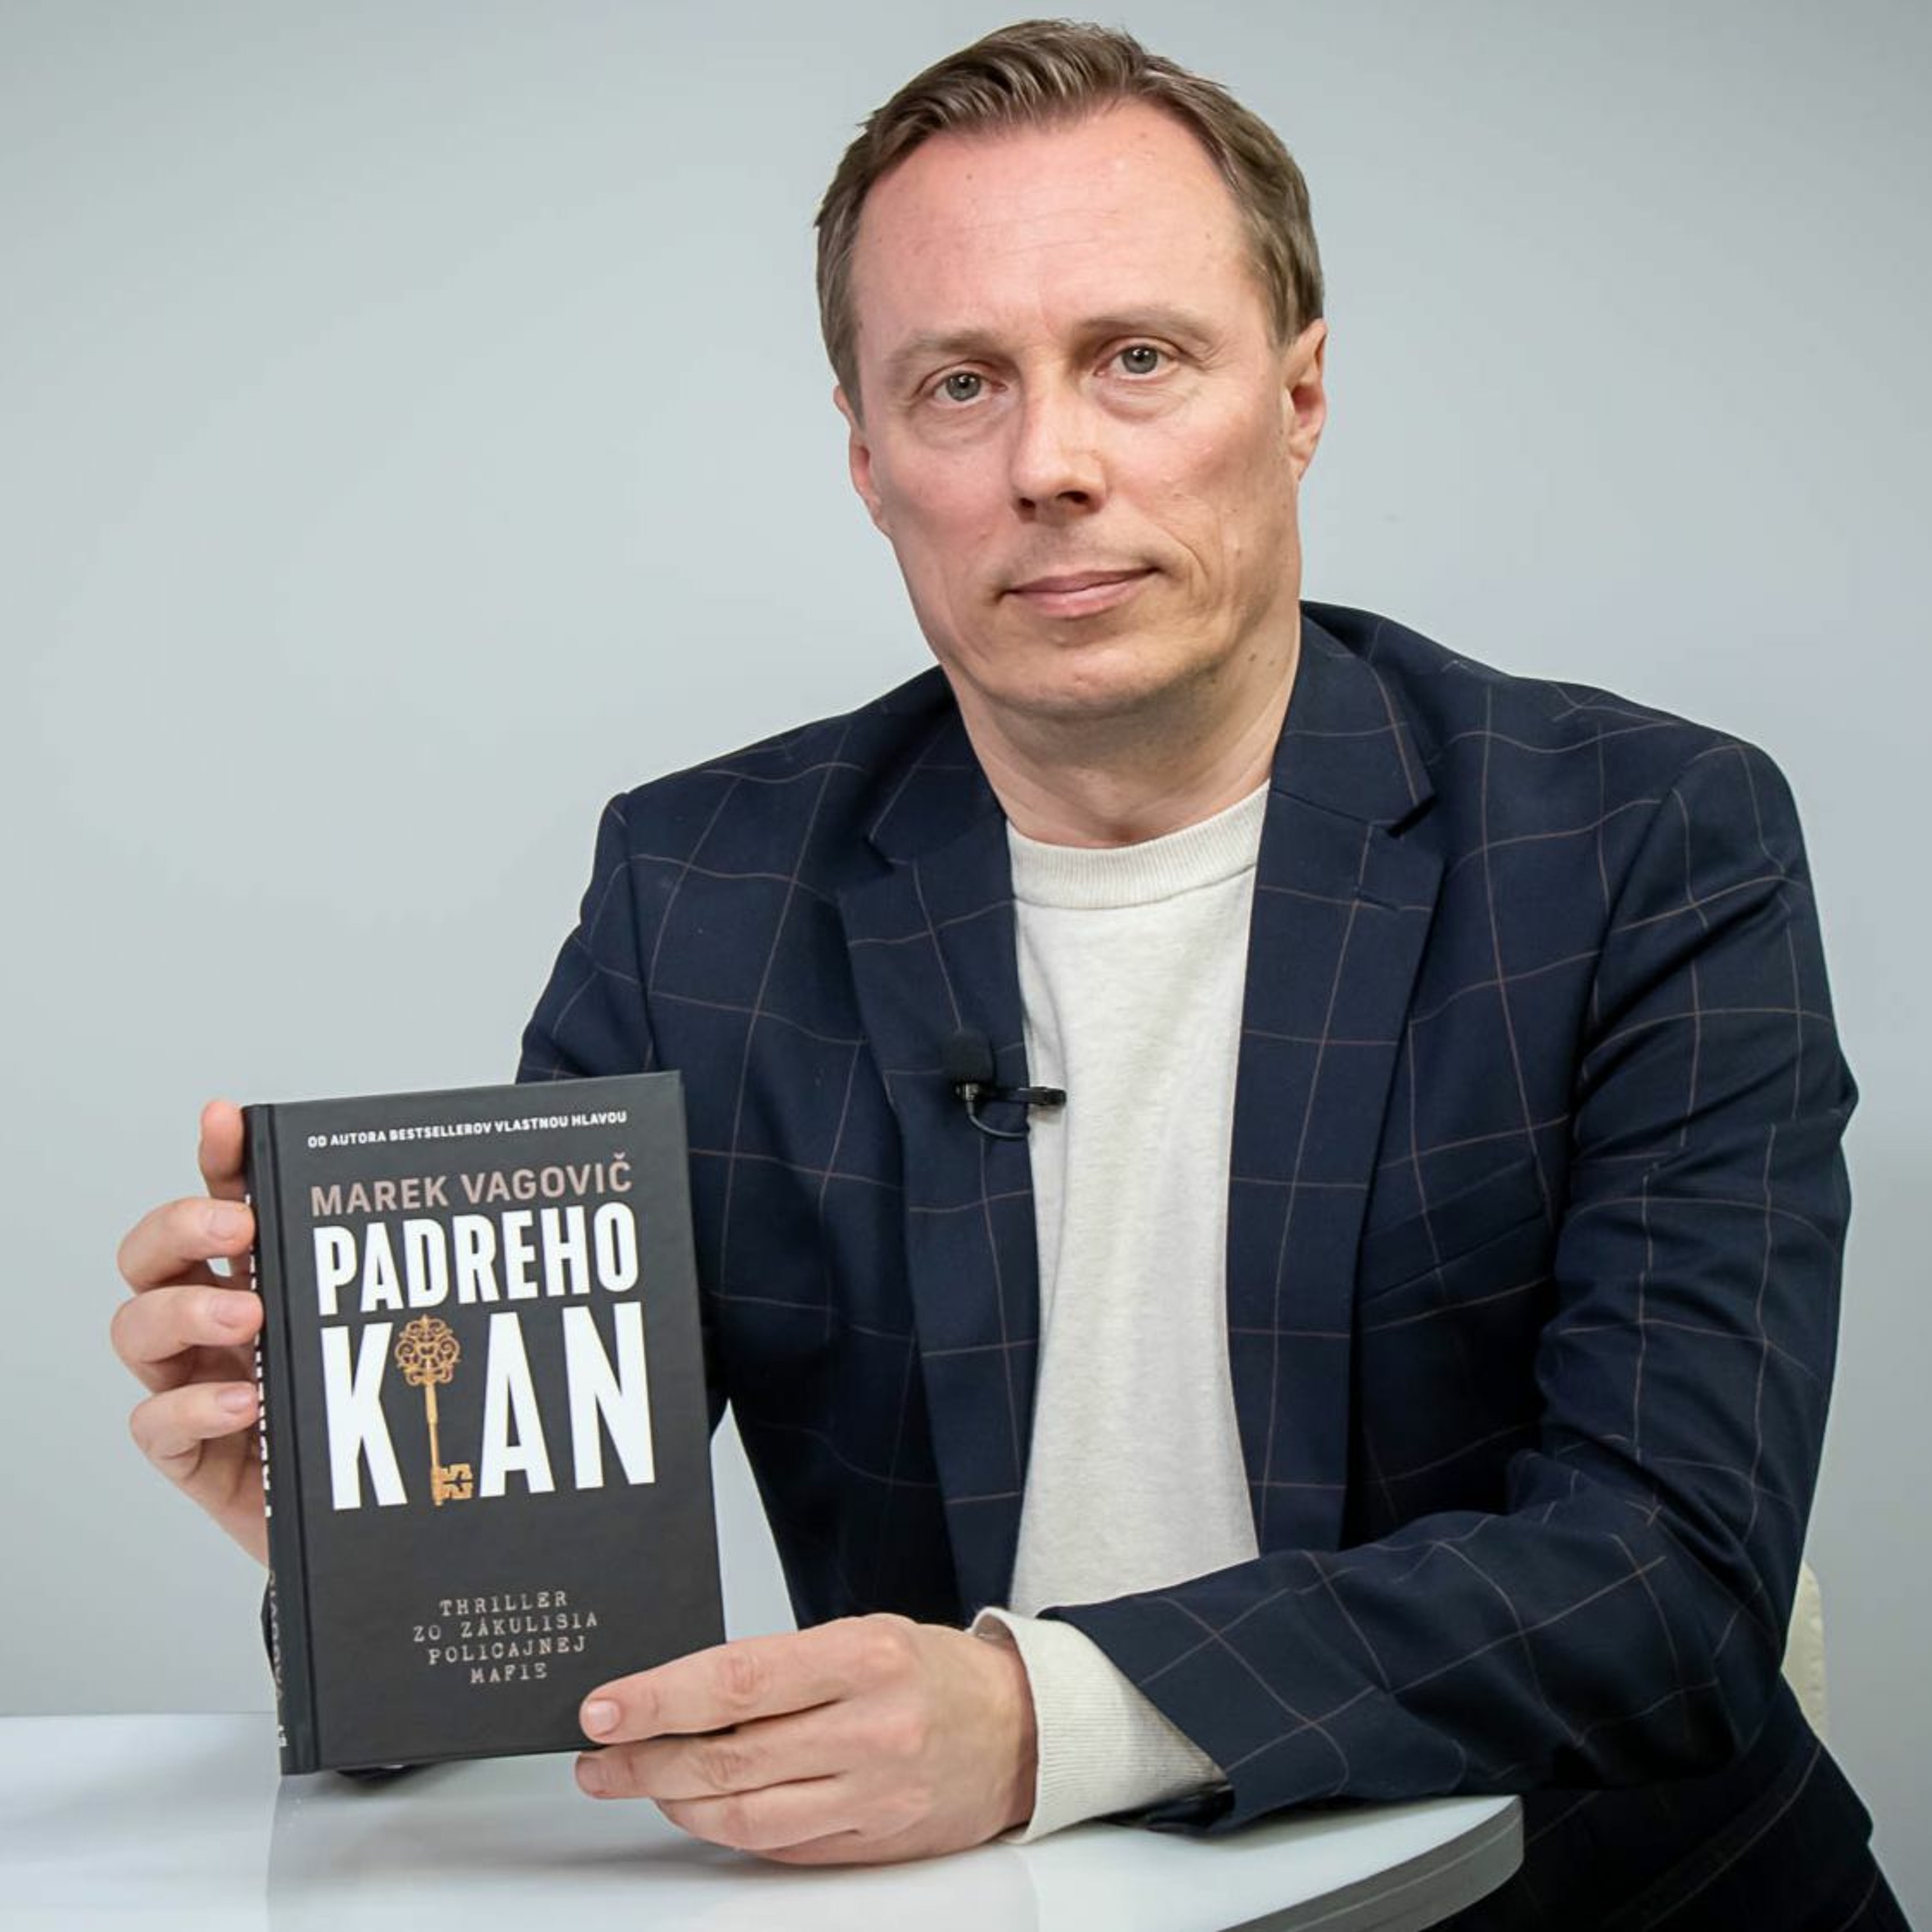 Marek Vagovič o knihe Padreho klan: Ukazujem, ako štát u nás splynul s organizovaným zločinom